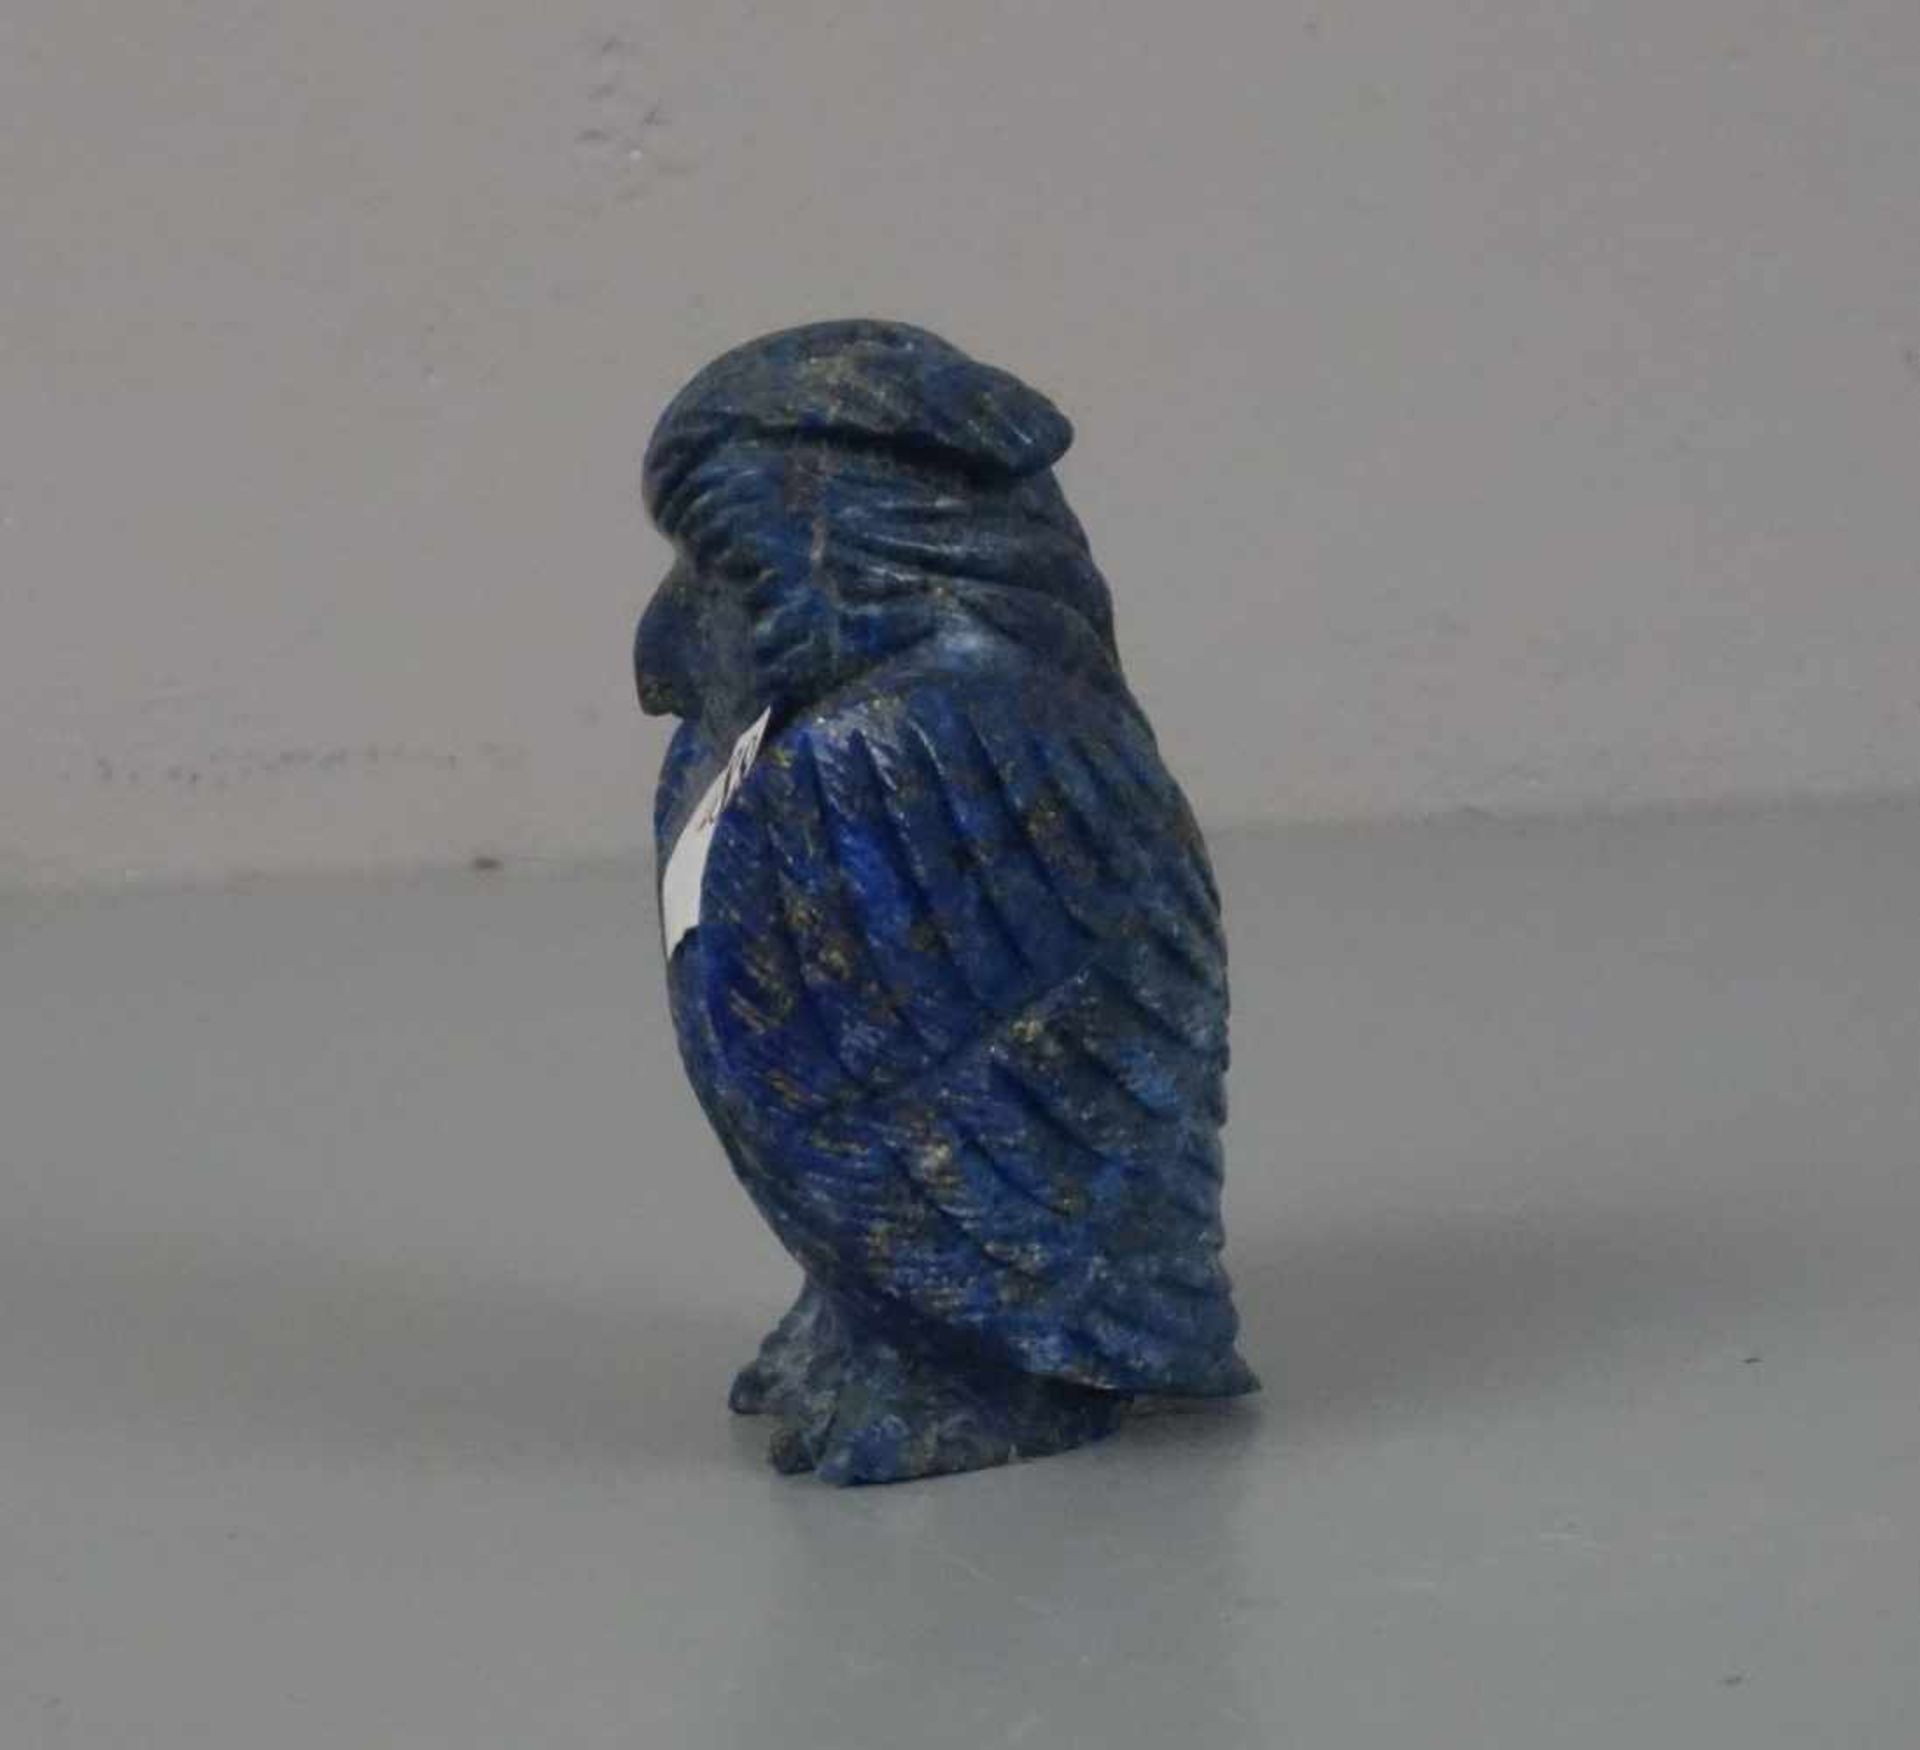 TIERFIGUR / ZIEROBJEKT: Edelstein-Eule / gemstone owl figure, wohl 20. Jh., ungemarkt, geschnitzt, - Bild 4 aus 4